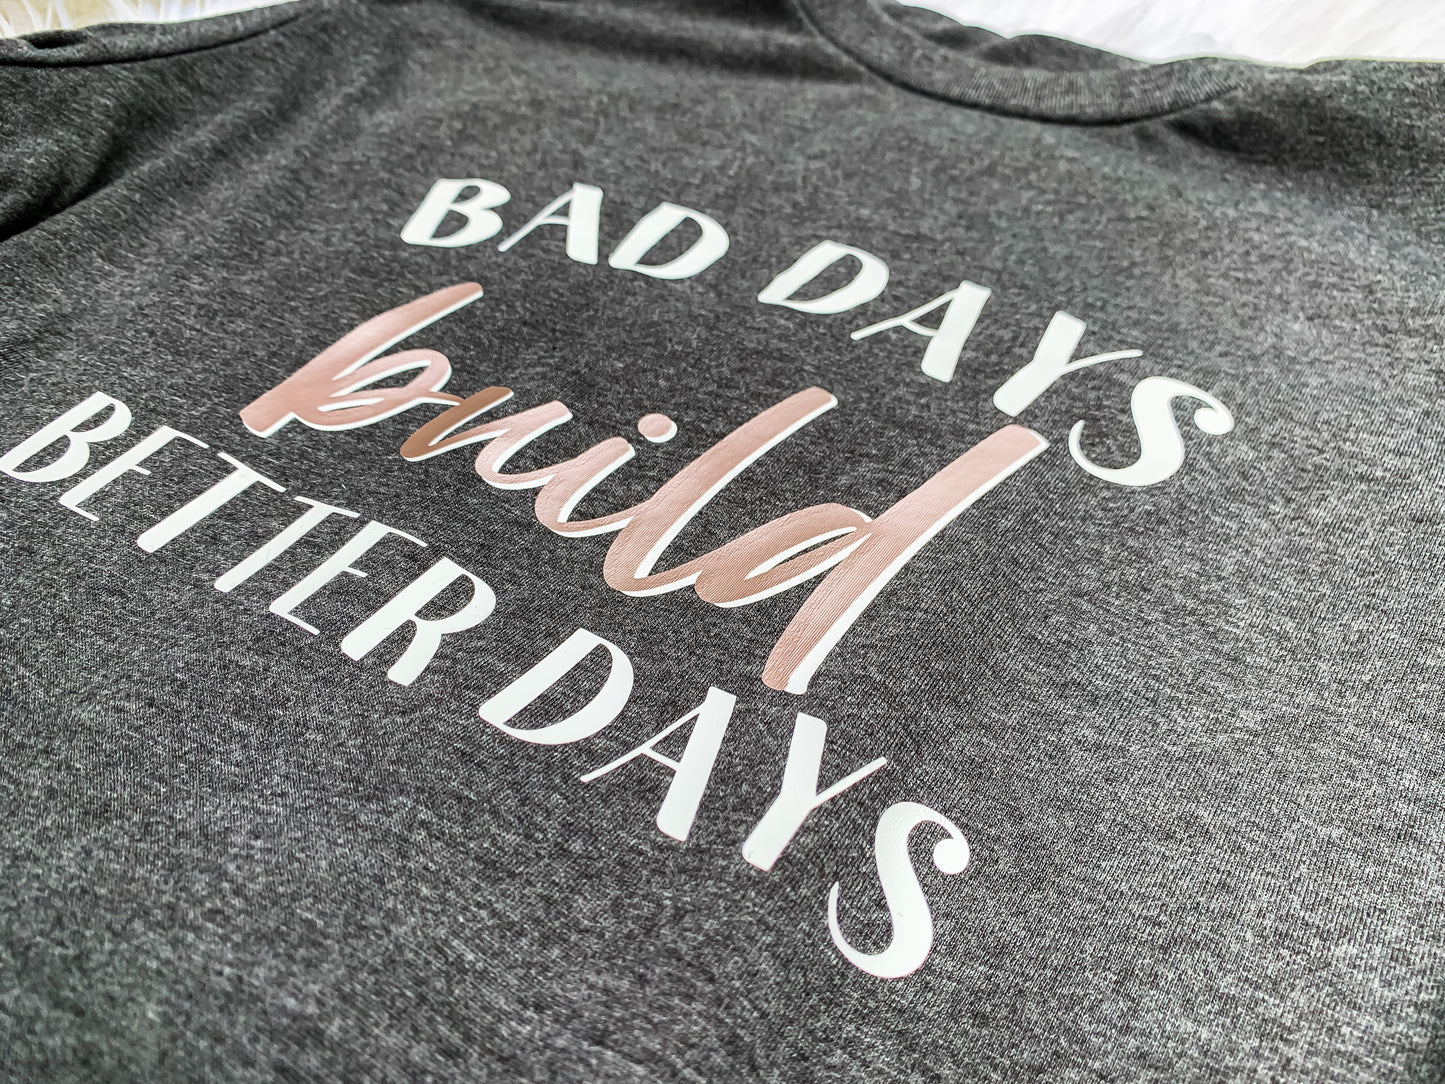 BAD DAYS